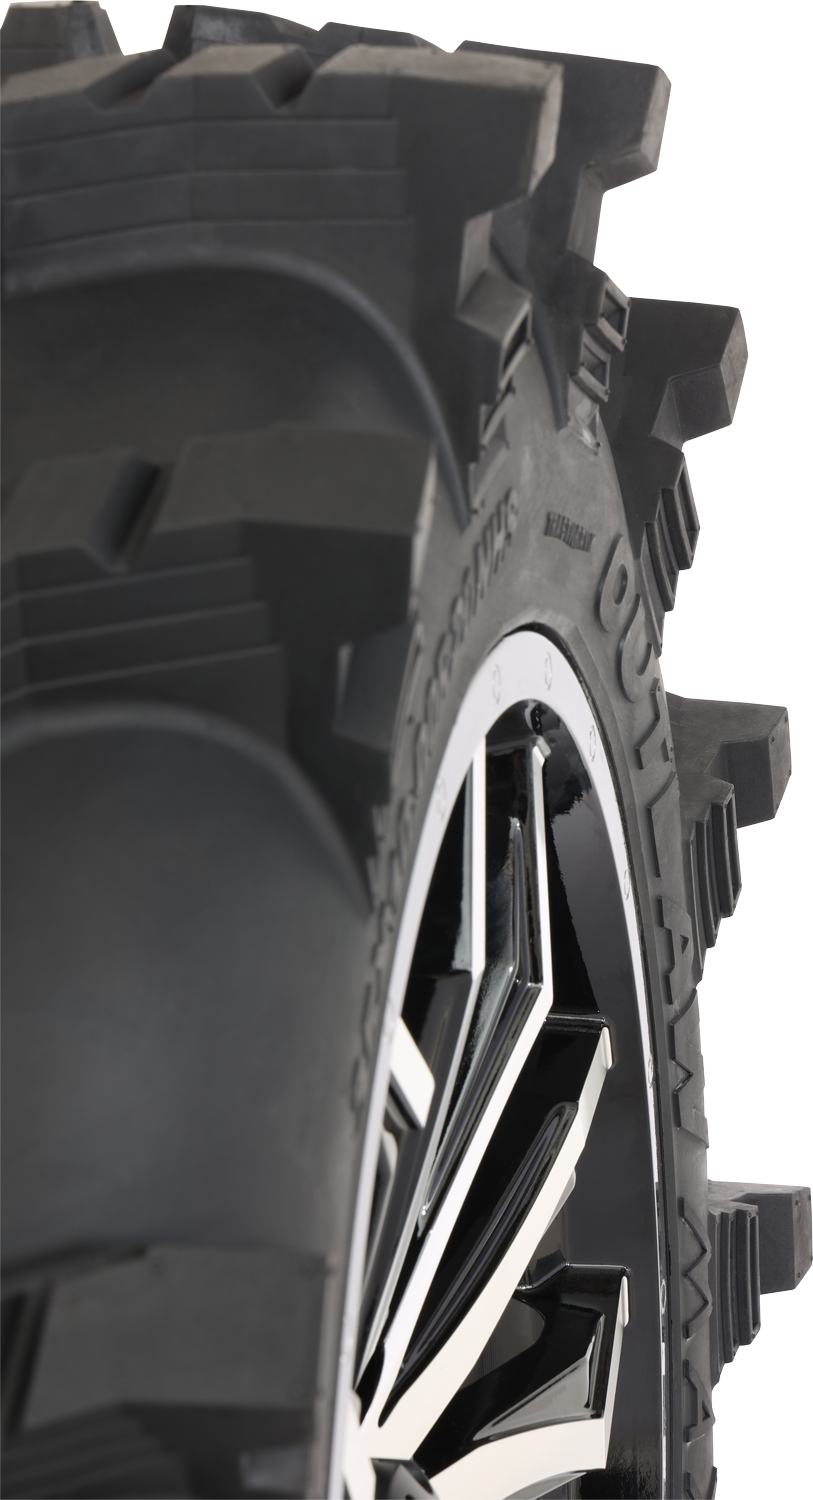 Neumático HIGH LIFTER - Outlaw Max - Delantero/Trasero - 33x10R20 - 8 capas 001-2368HL